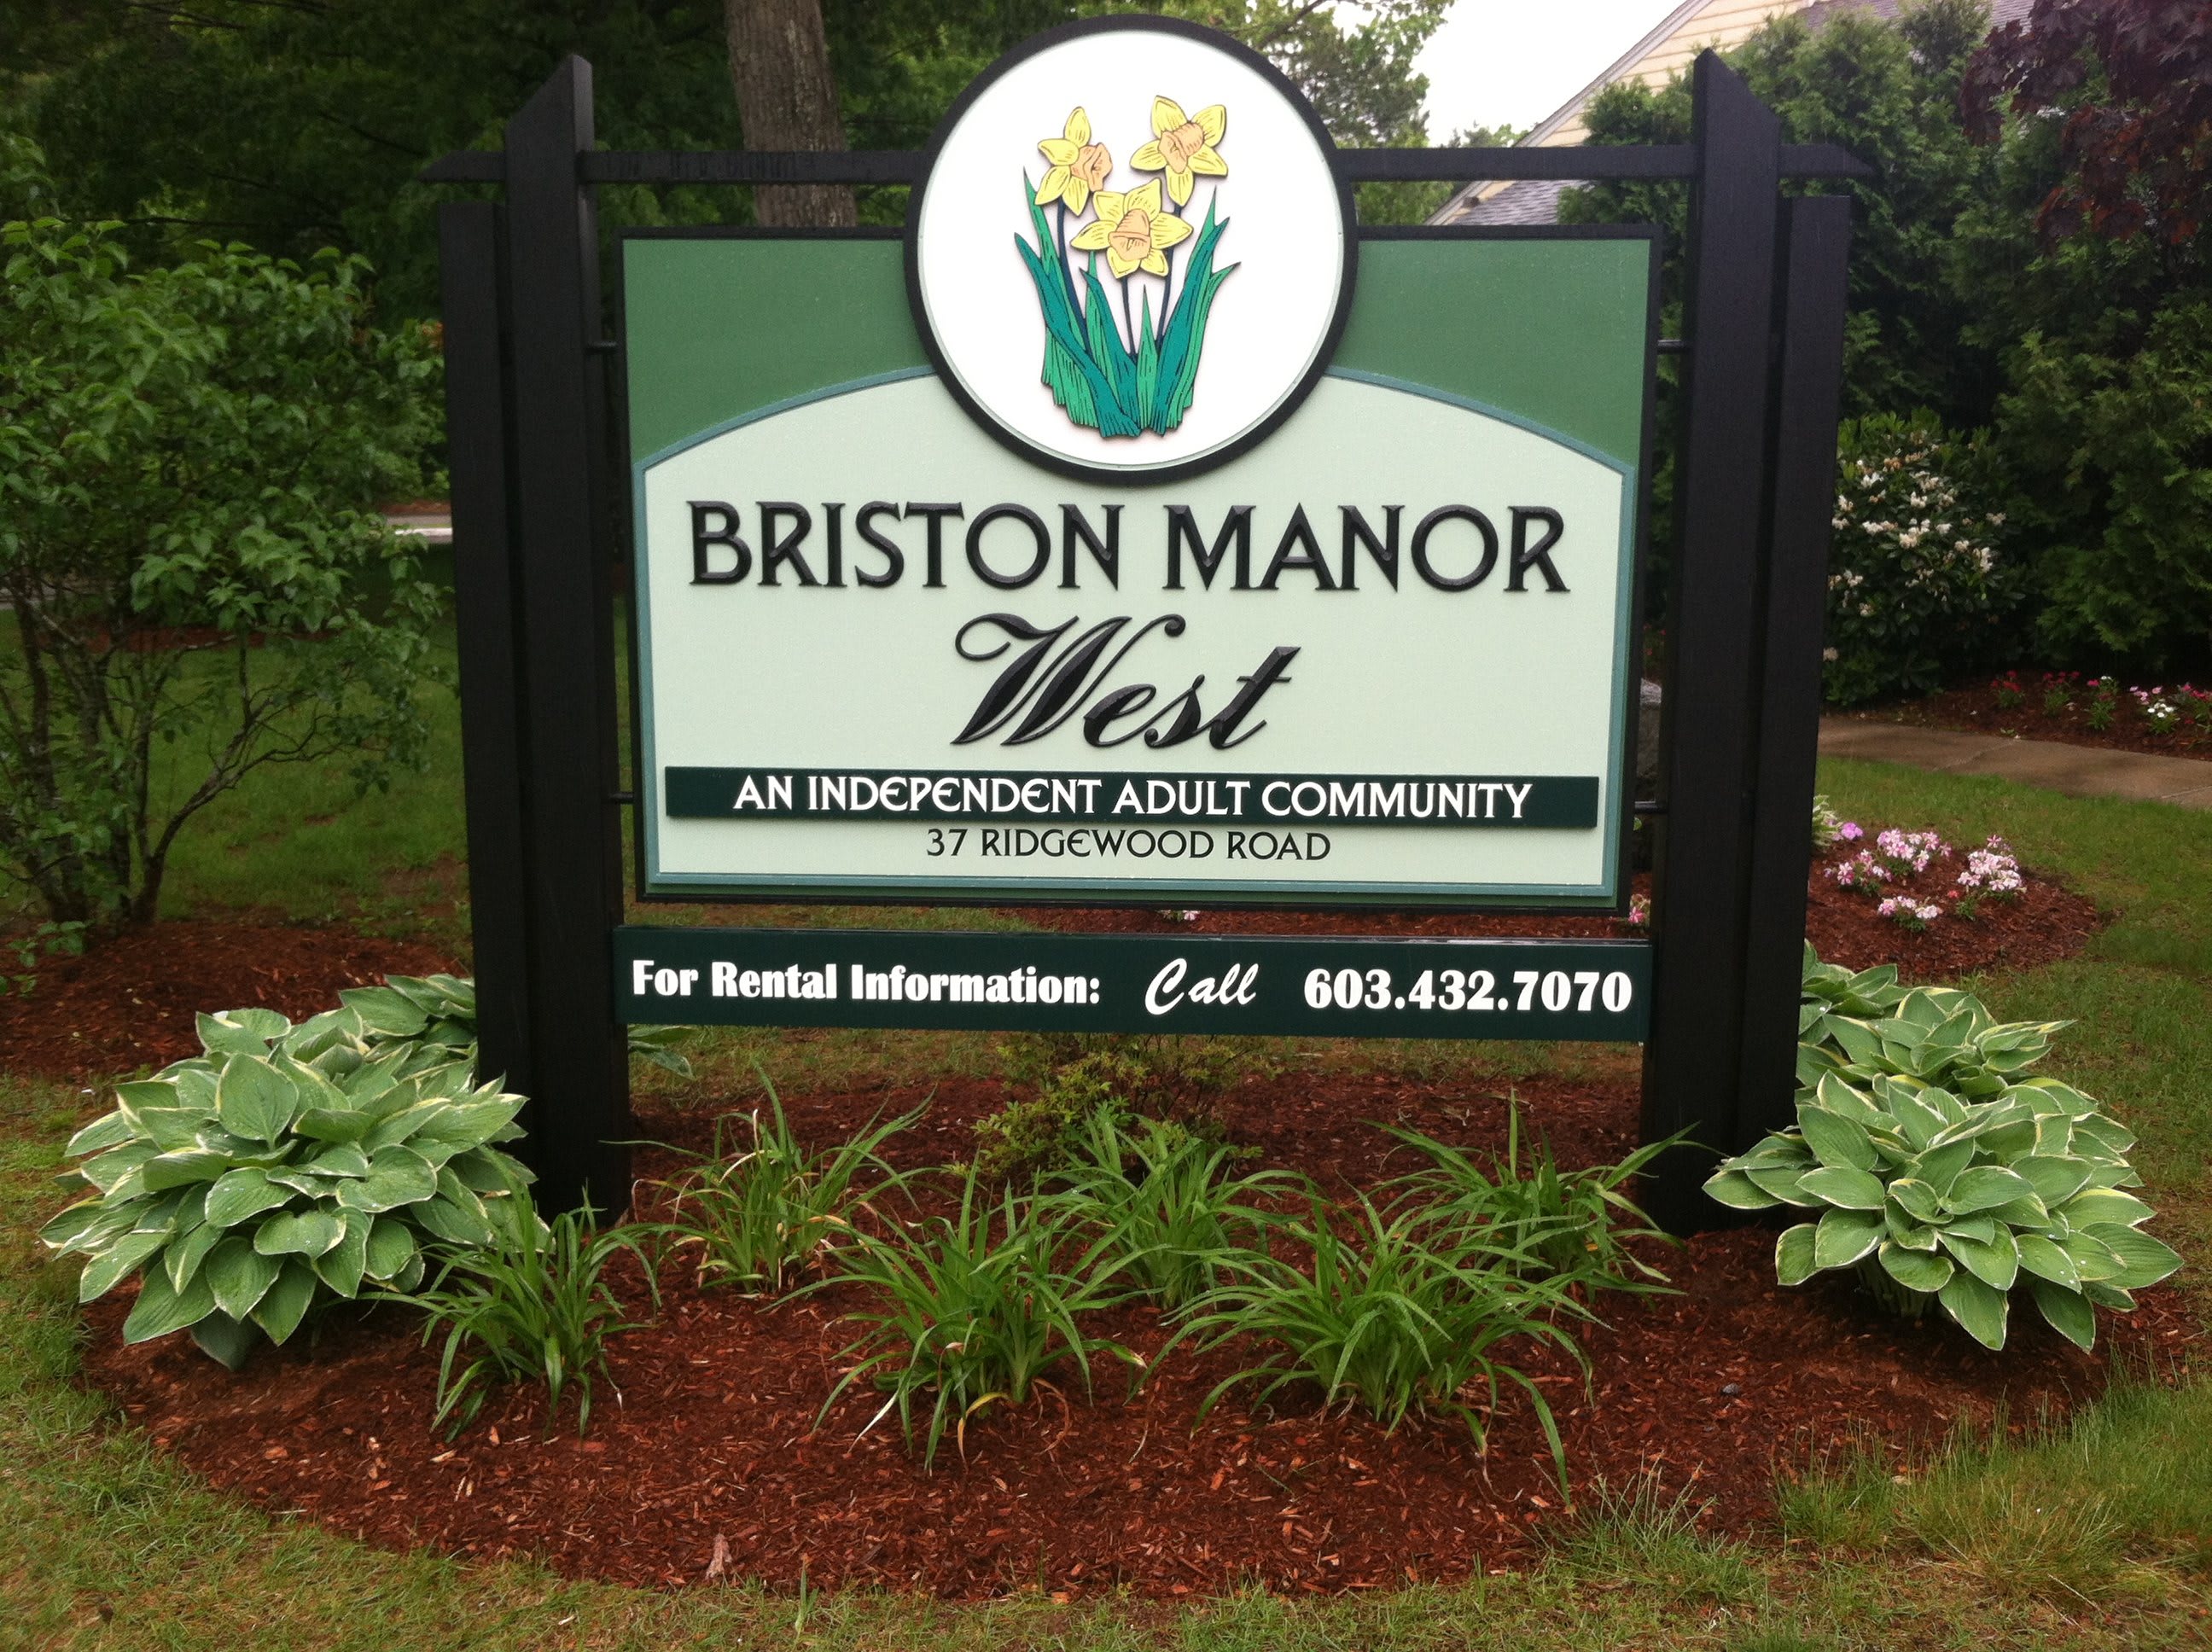 Briston Manor West 